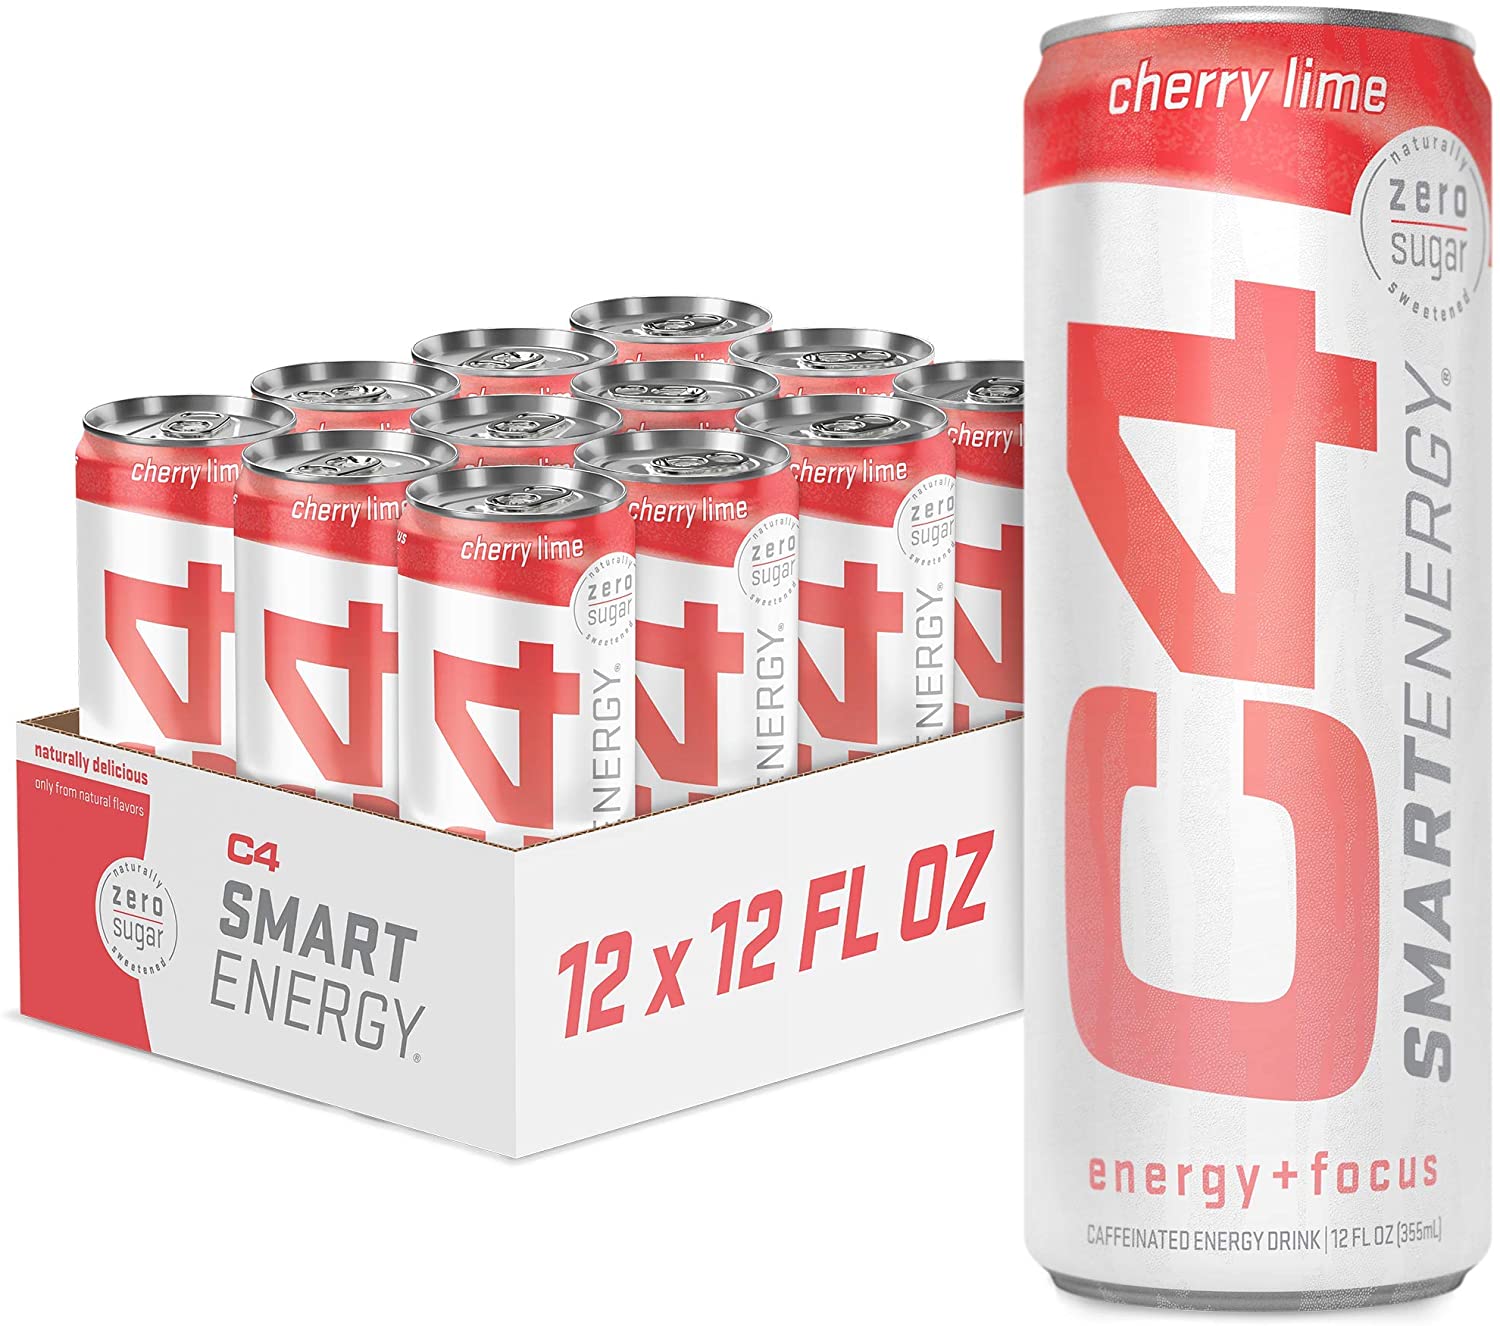 C4 Smart Energy®